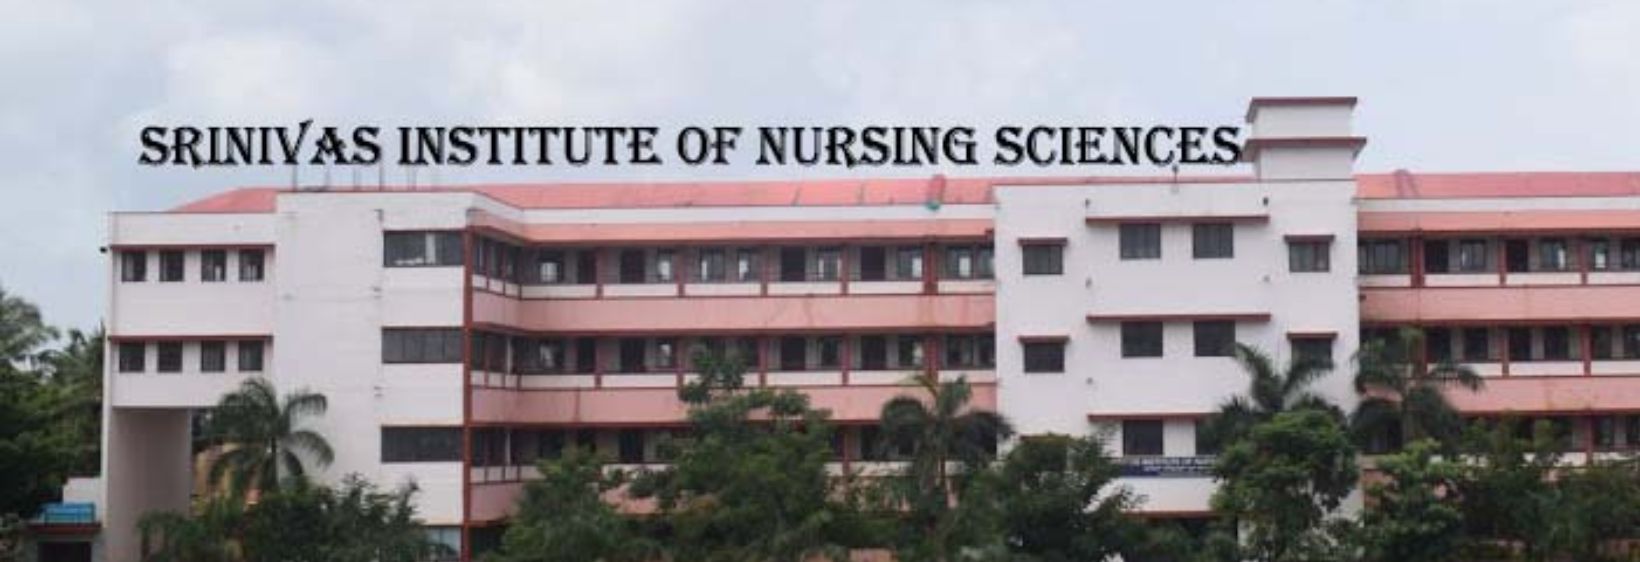 Srinivas Institute of Nursing Sciences - Mangalore